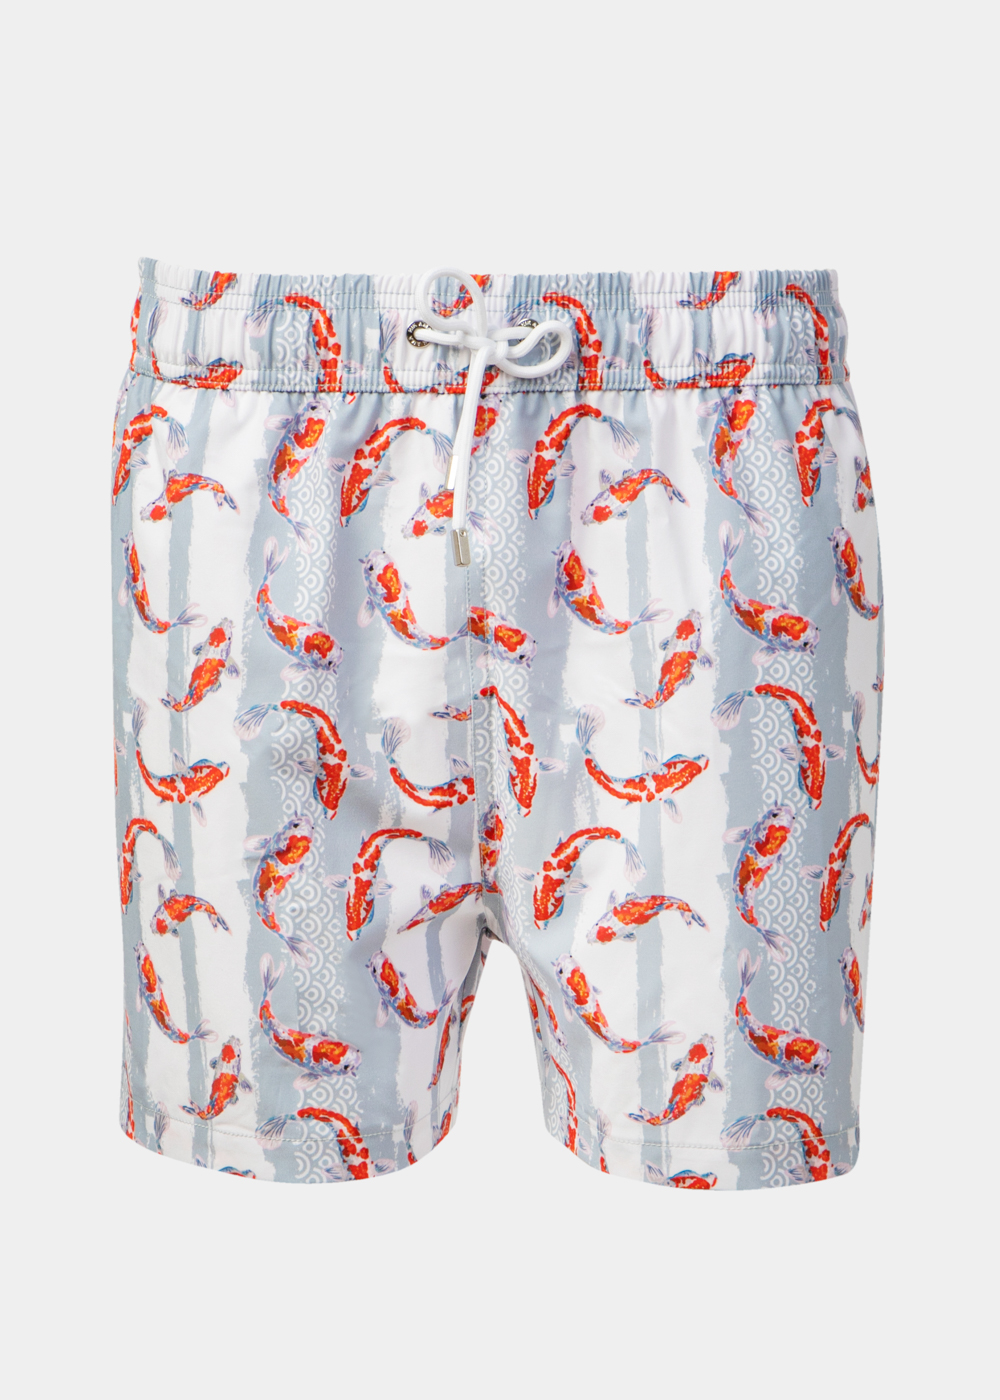 Red Koi Fishes Classic Men Swimwear